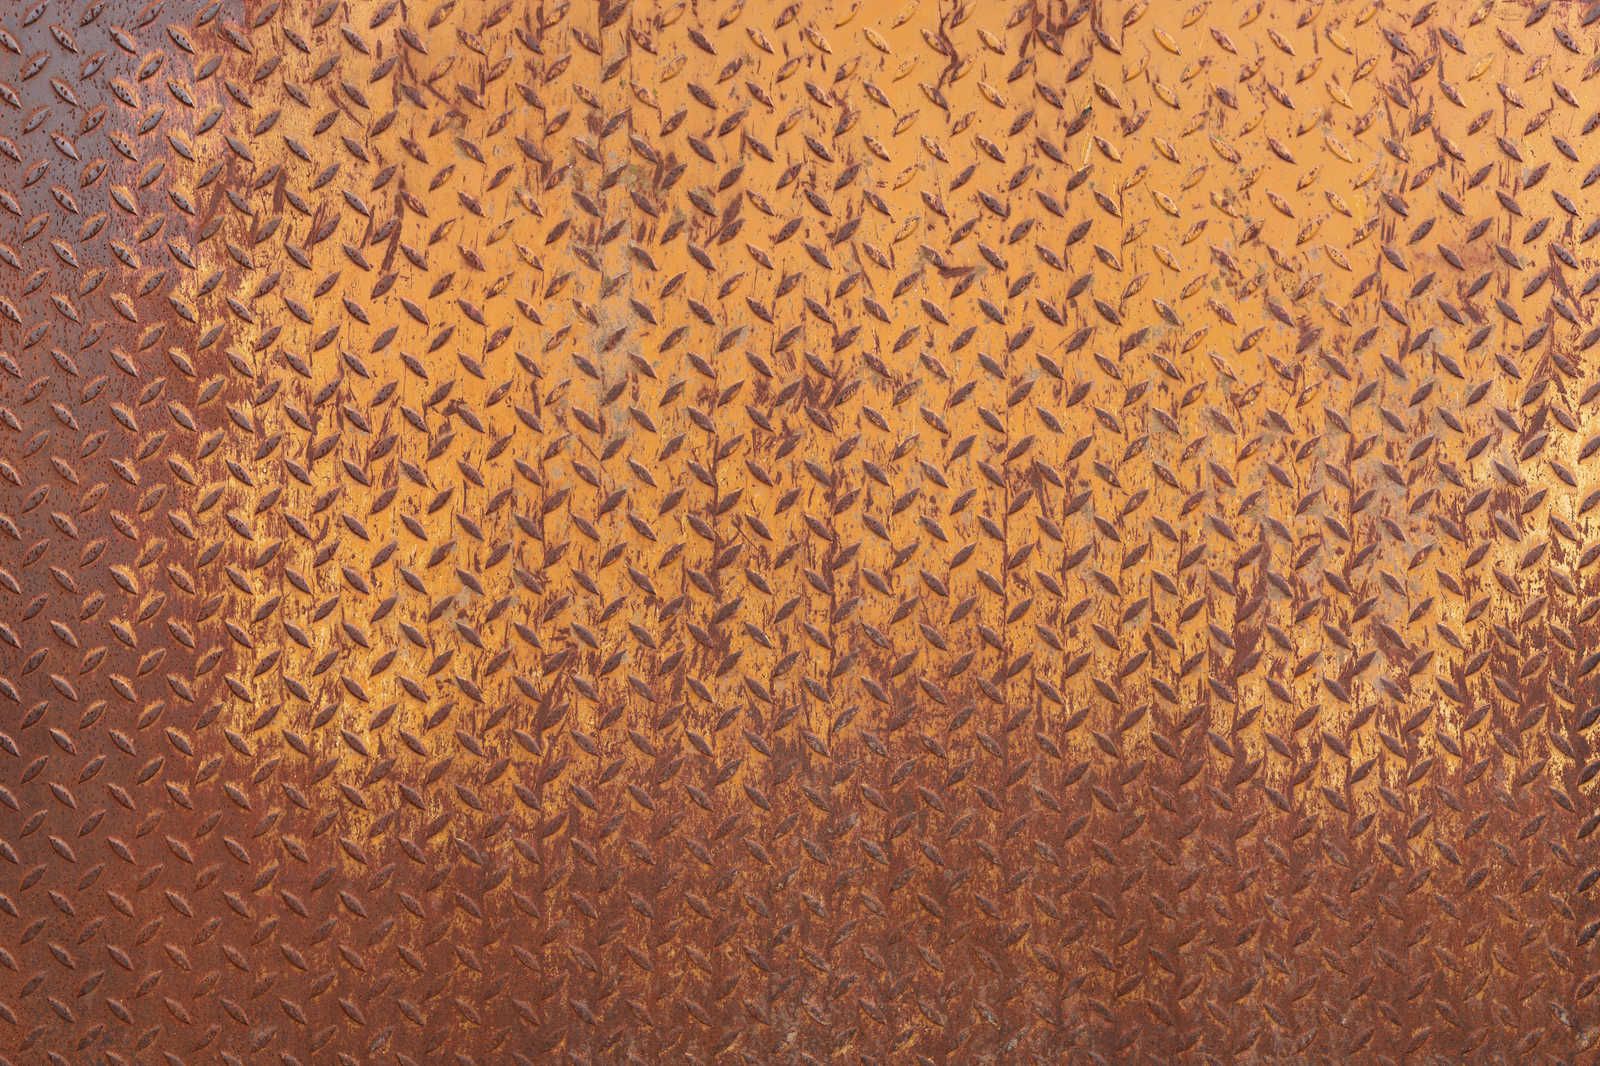             Metalen canvas schilderij Staalplaat Roest met Diamantpatroon - 0,90 m x 0,60 m
        